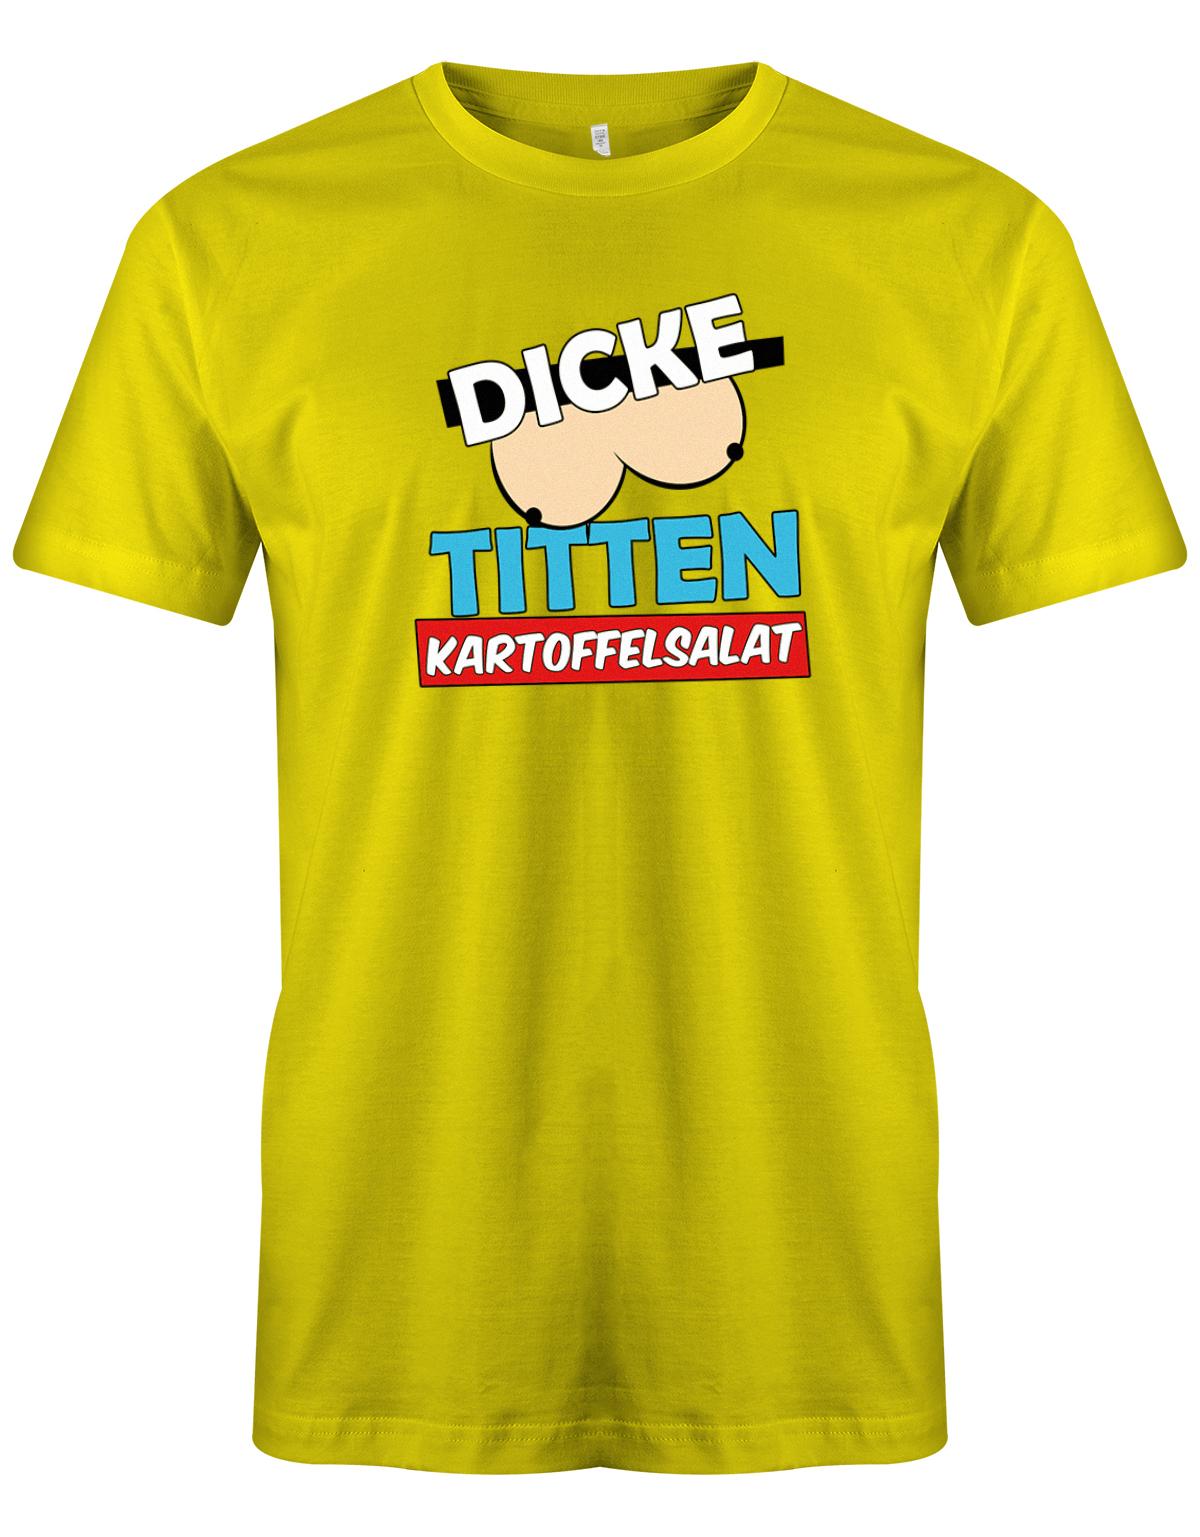 Dicke-Titten-Kartoffelsalat-Herren-Shirt-gelb